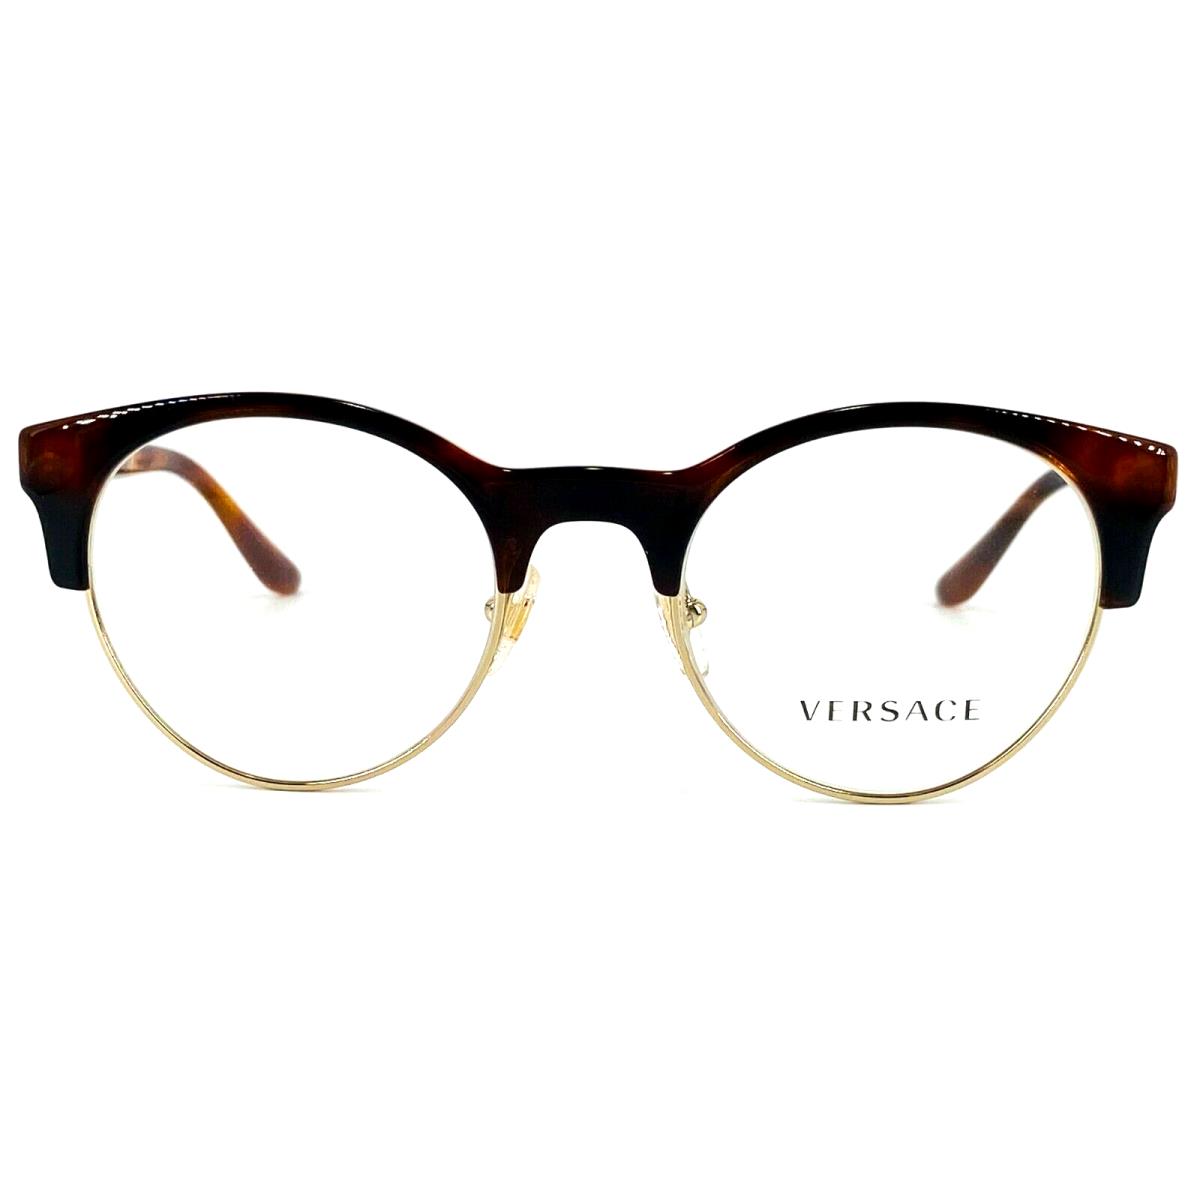 Versace eyeglasses  - 5217 Havana , Brown Frame 0